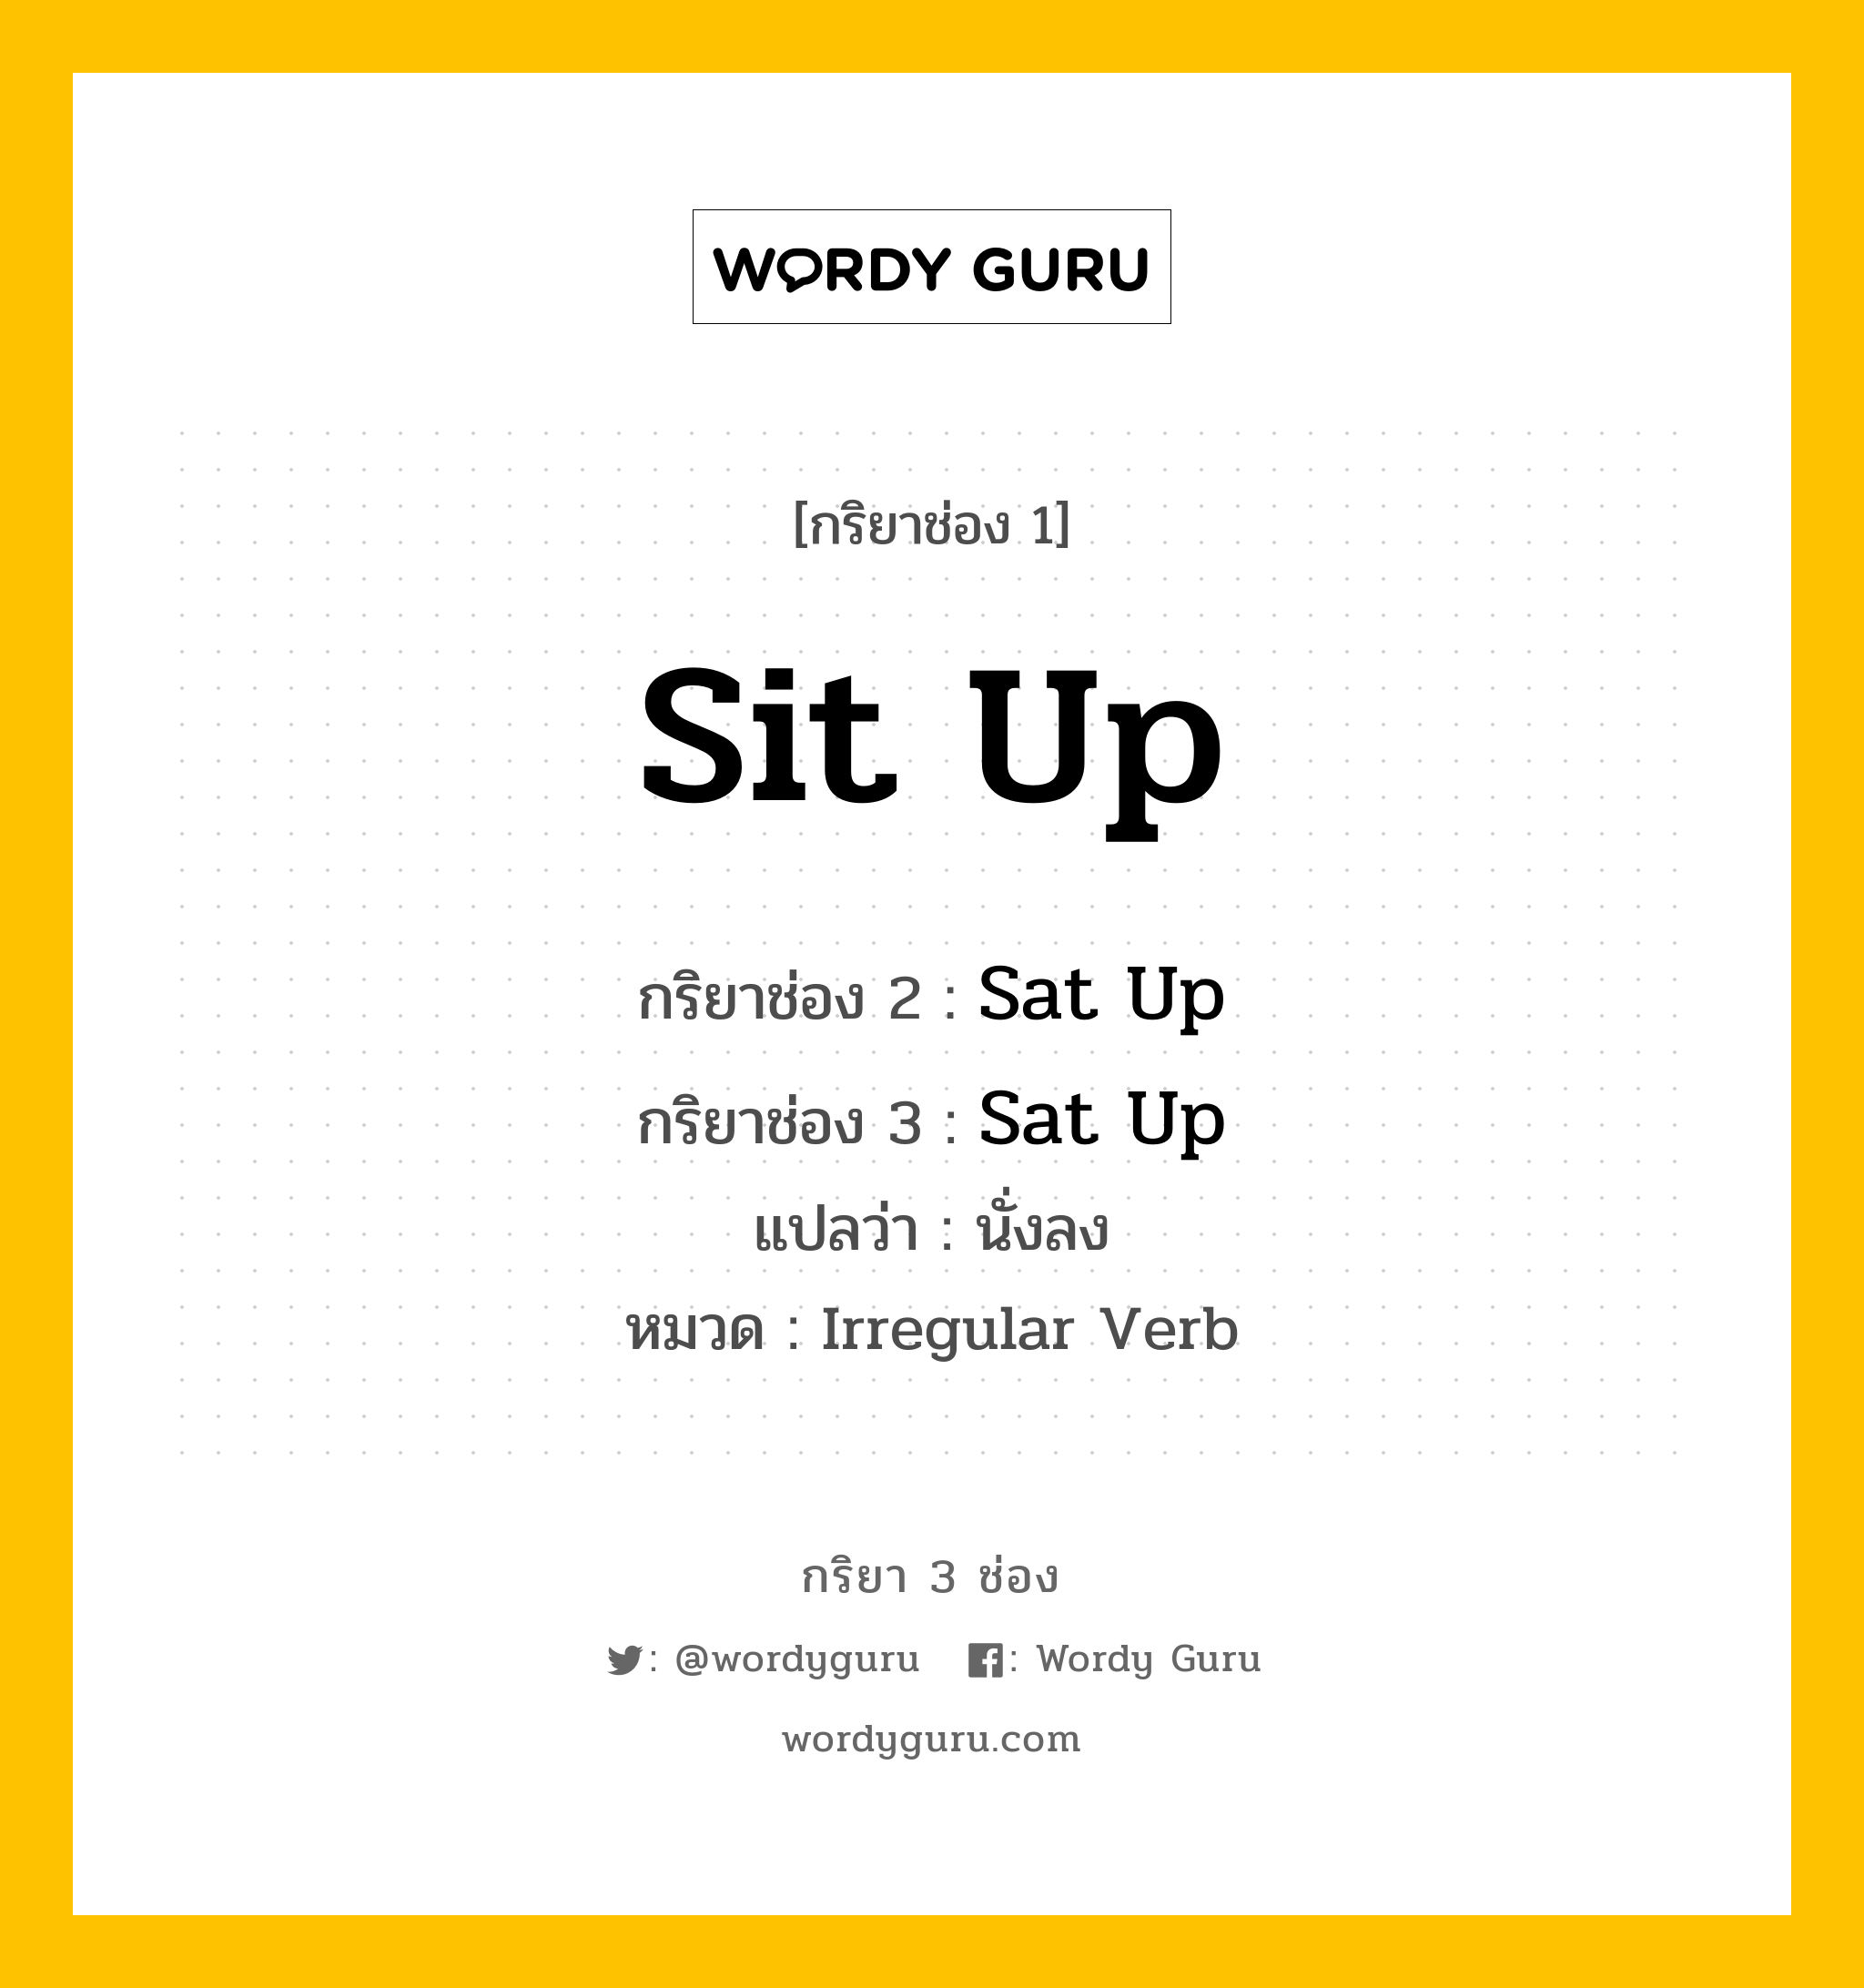 กริยา 3 ช่อง ของ Sit Up คืออะไร? มาดูคำอ่าน คำแปลกันเลย, กริยาช่อง 1 Sit Up กริยาช่อง 2 Sat Up กริยาช่อง 3 Sat Up แปลว่า นั่งลง หมวด Irregular Verb หมวด Irregular Verb